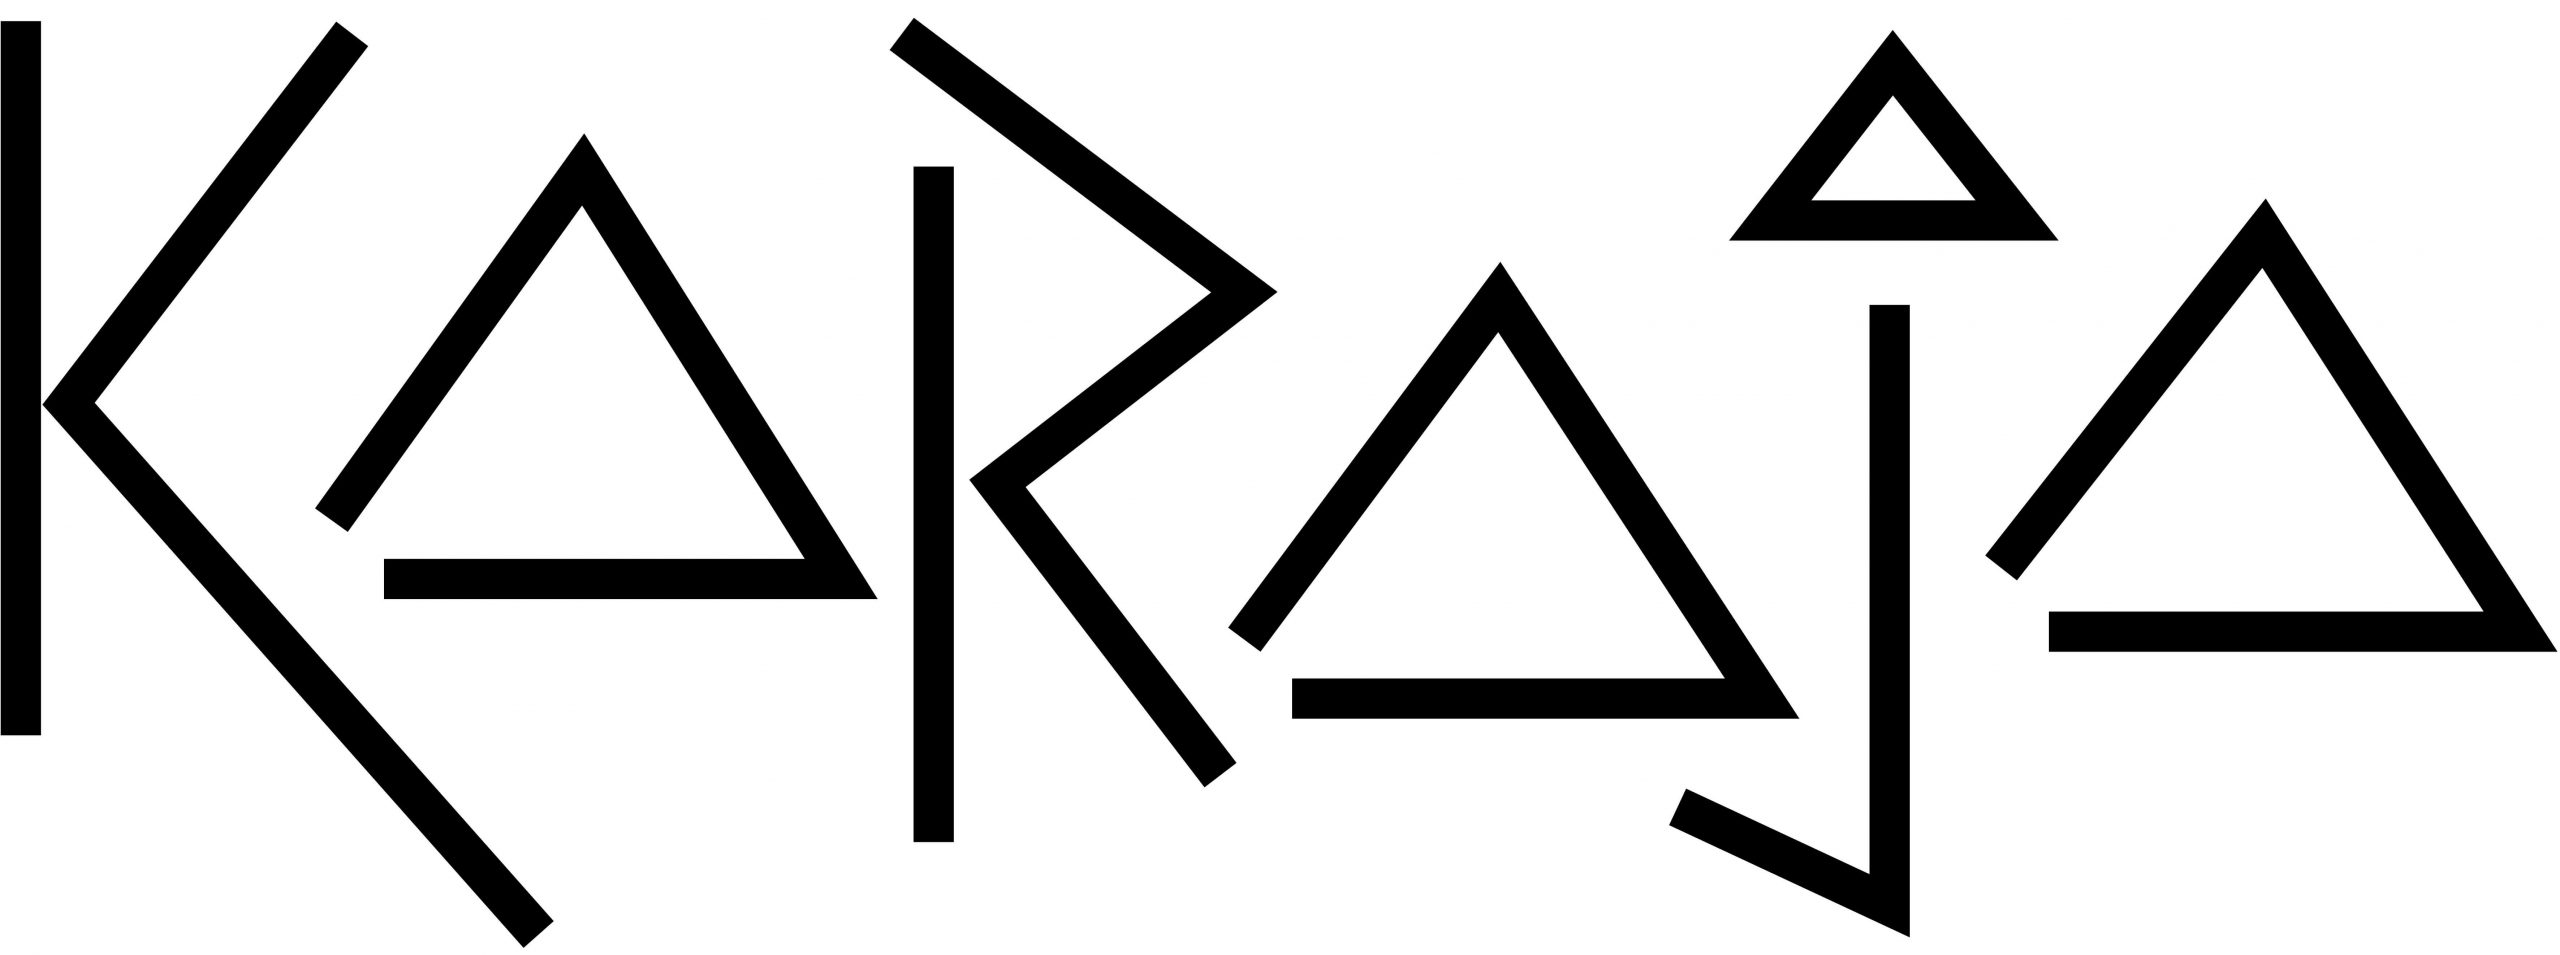 karaja-logo